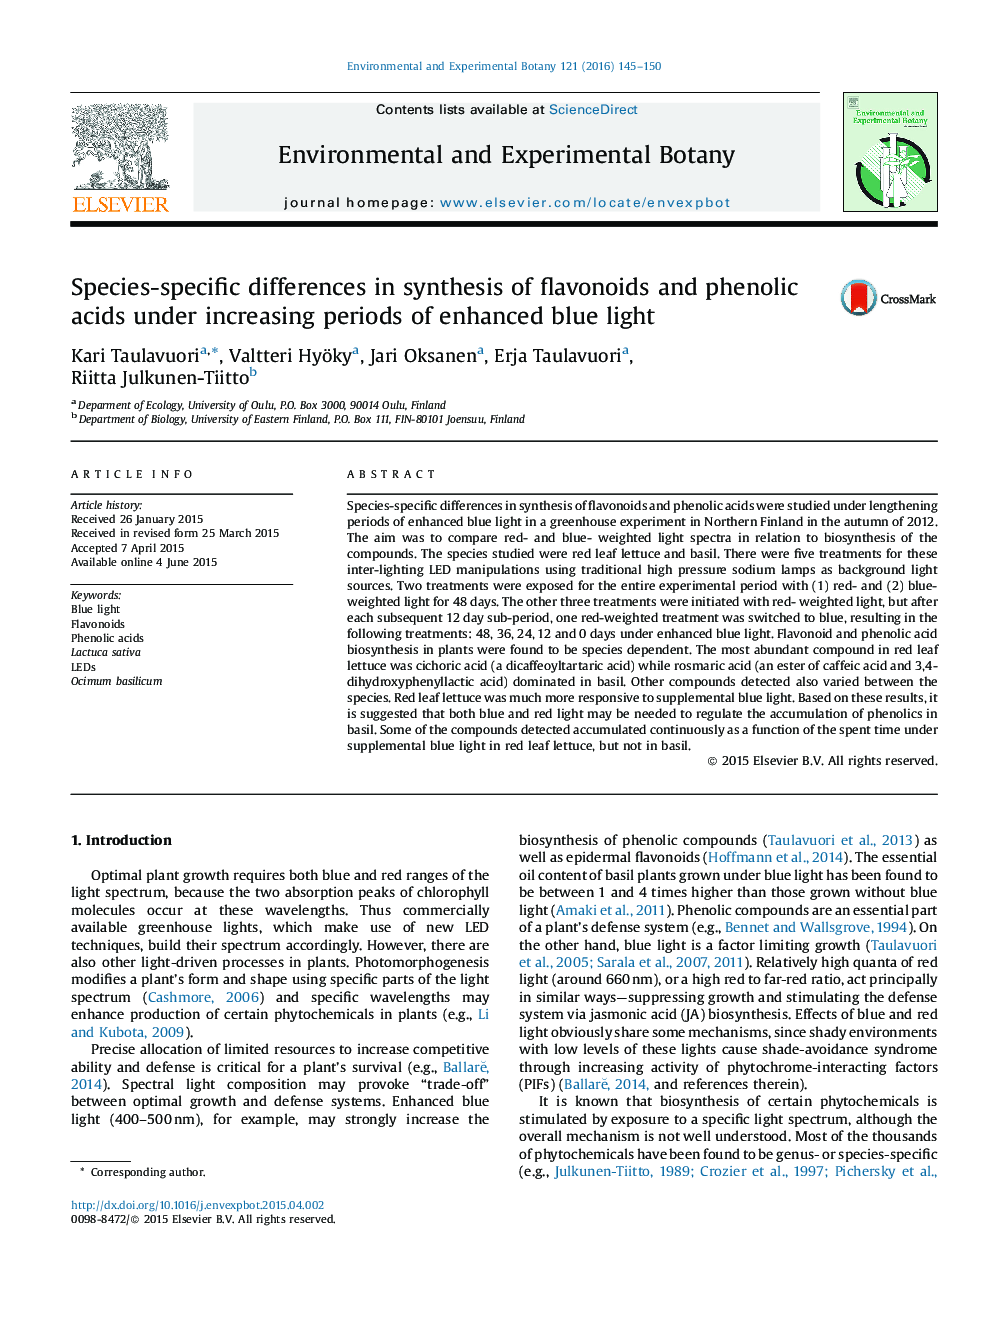 تفاوت-گونه خاص در سنتز فلاونوئیدها و اسیدهای فنولیک تحت دوره افزایش نور آبی افزایش یافته